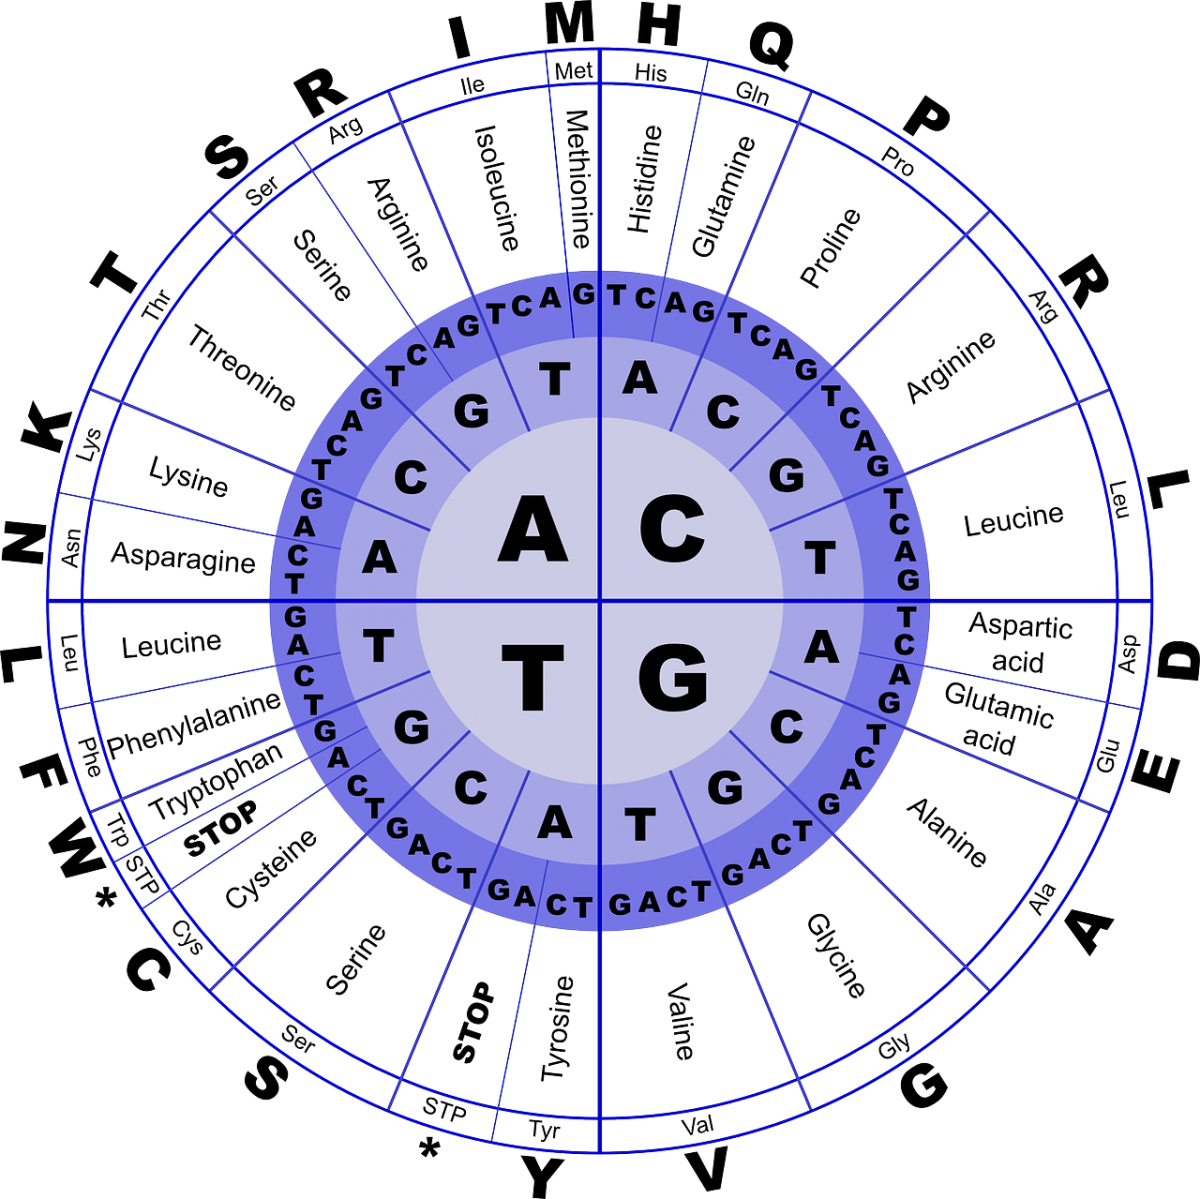 Codon-Übersicht: In der Mitte stehen die vier Buchstaben A,C,G und T. Werden diese mit zwei weiteren Basen kombiniert, erhält man am Ende eine Aminosäure. Jeder Buchstabe steht für eine andere Aminosäure. Das Schaubild zeigt, dass manche Aminosäuren aus verschiedenen Basen-Kombinationen bestehen, z. B. Proline.